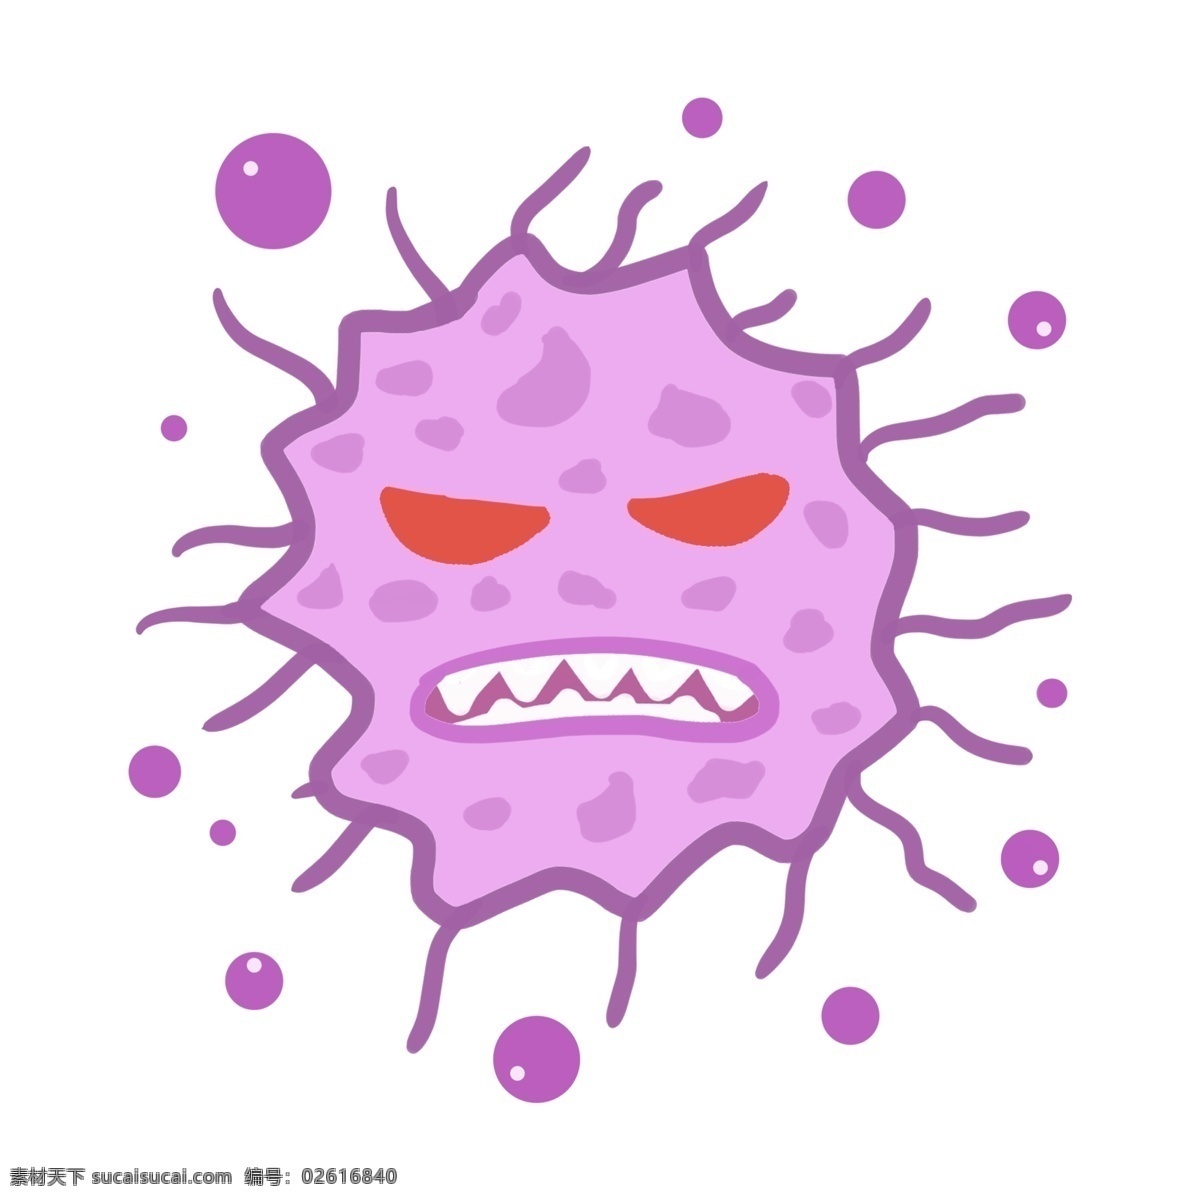 可怕 紫色 细菌 插画 病毒 细菌插图 可怕的细菌 紫色细菌插画 紫色病毒 顽固病毒细菌